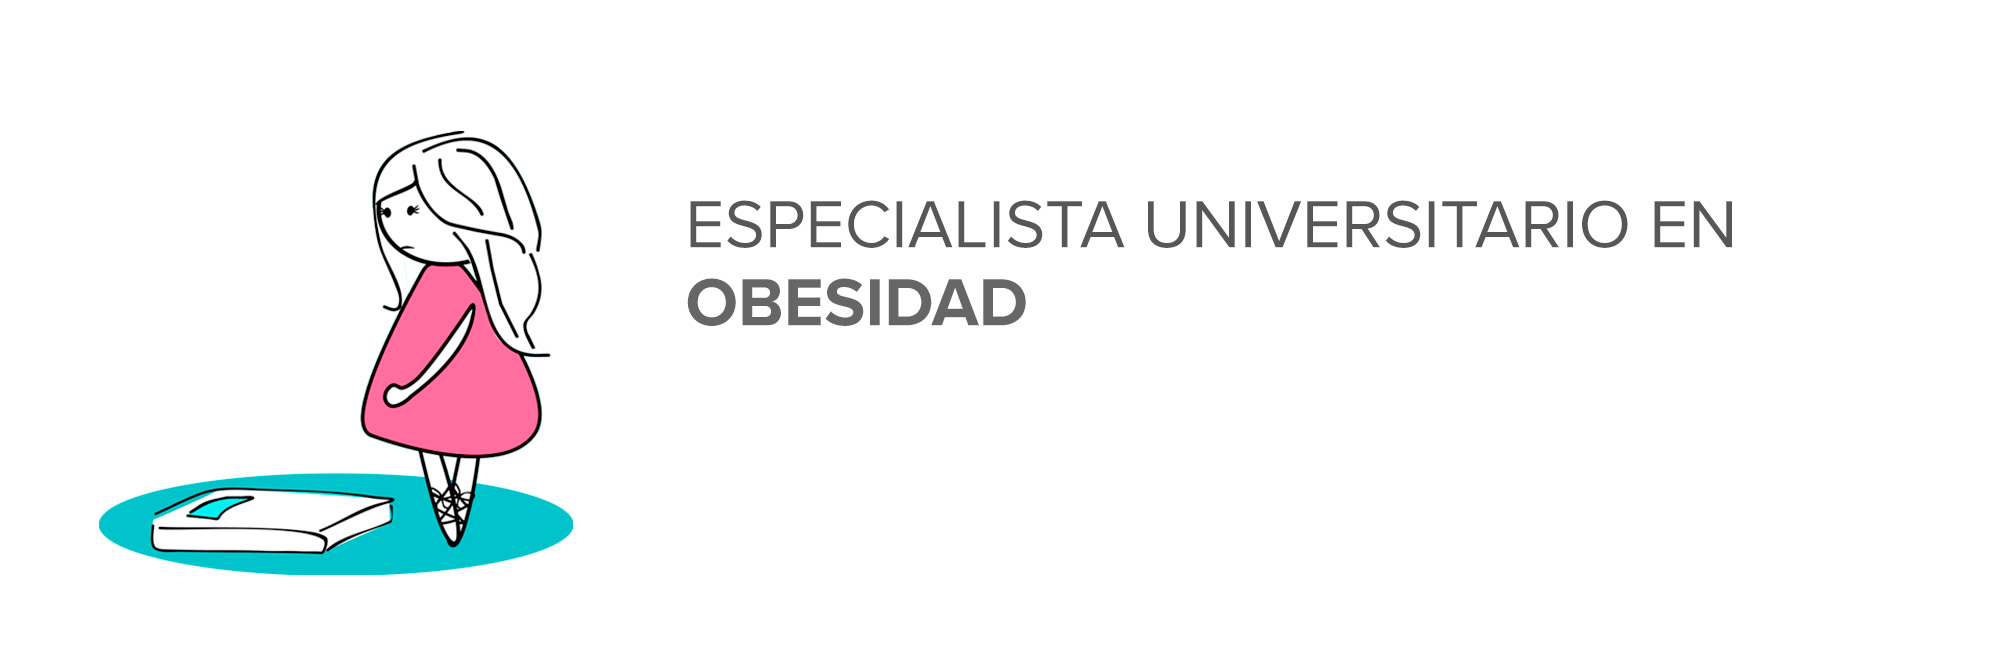 Especialista Universitario en Obesidad (OBEBASICO1)